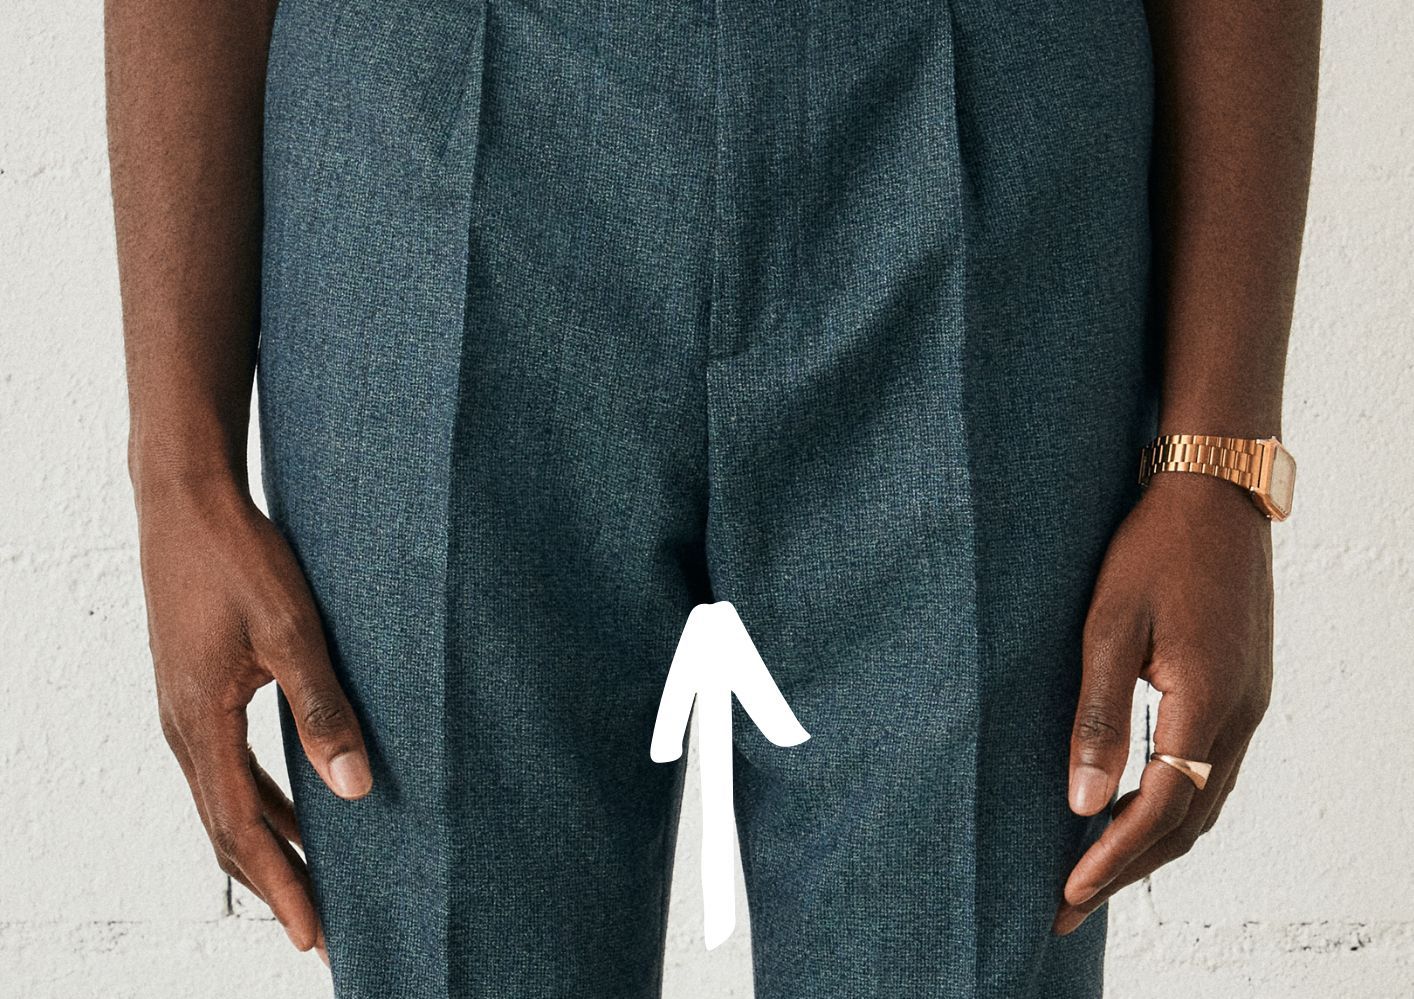 Pantalon trop long : comment ajuster l'ourlet d'un jean pour